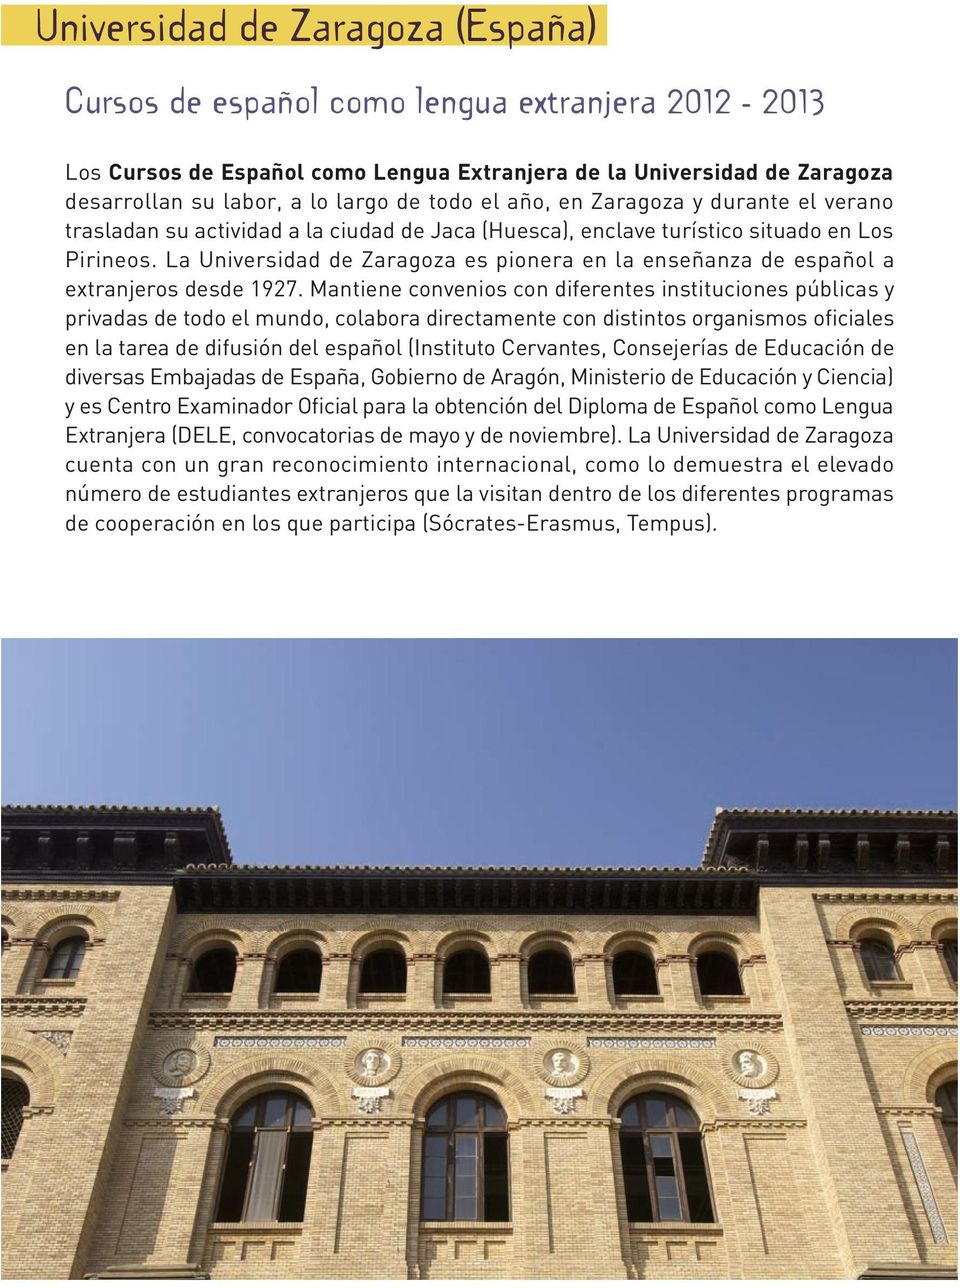 La Universidad de Zaragoza es pionera en la enseñanza de español a extranjeros desde 1927.